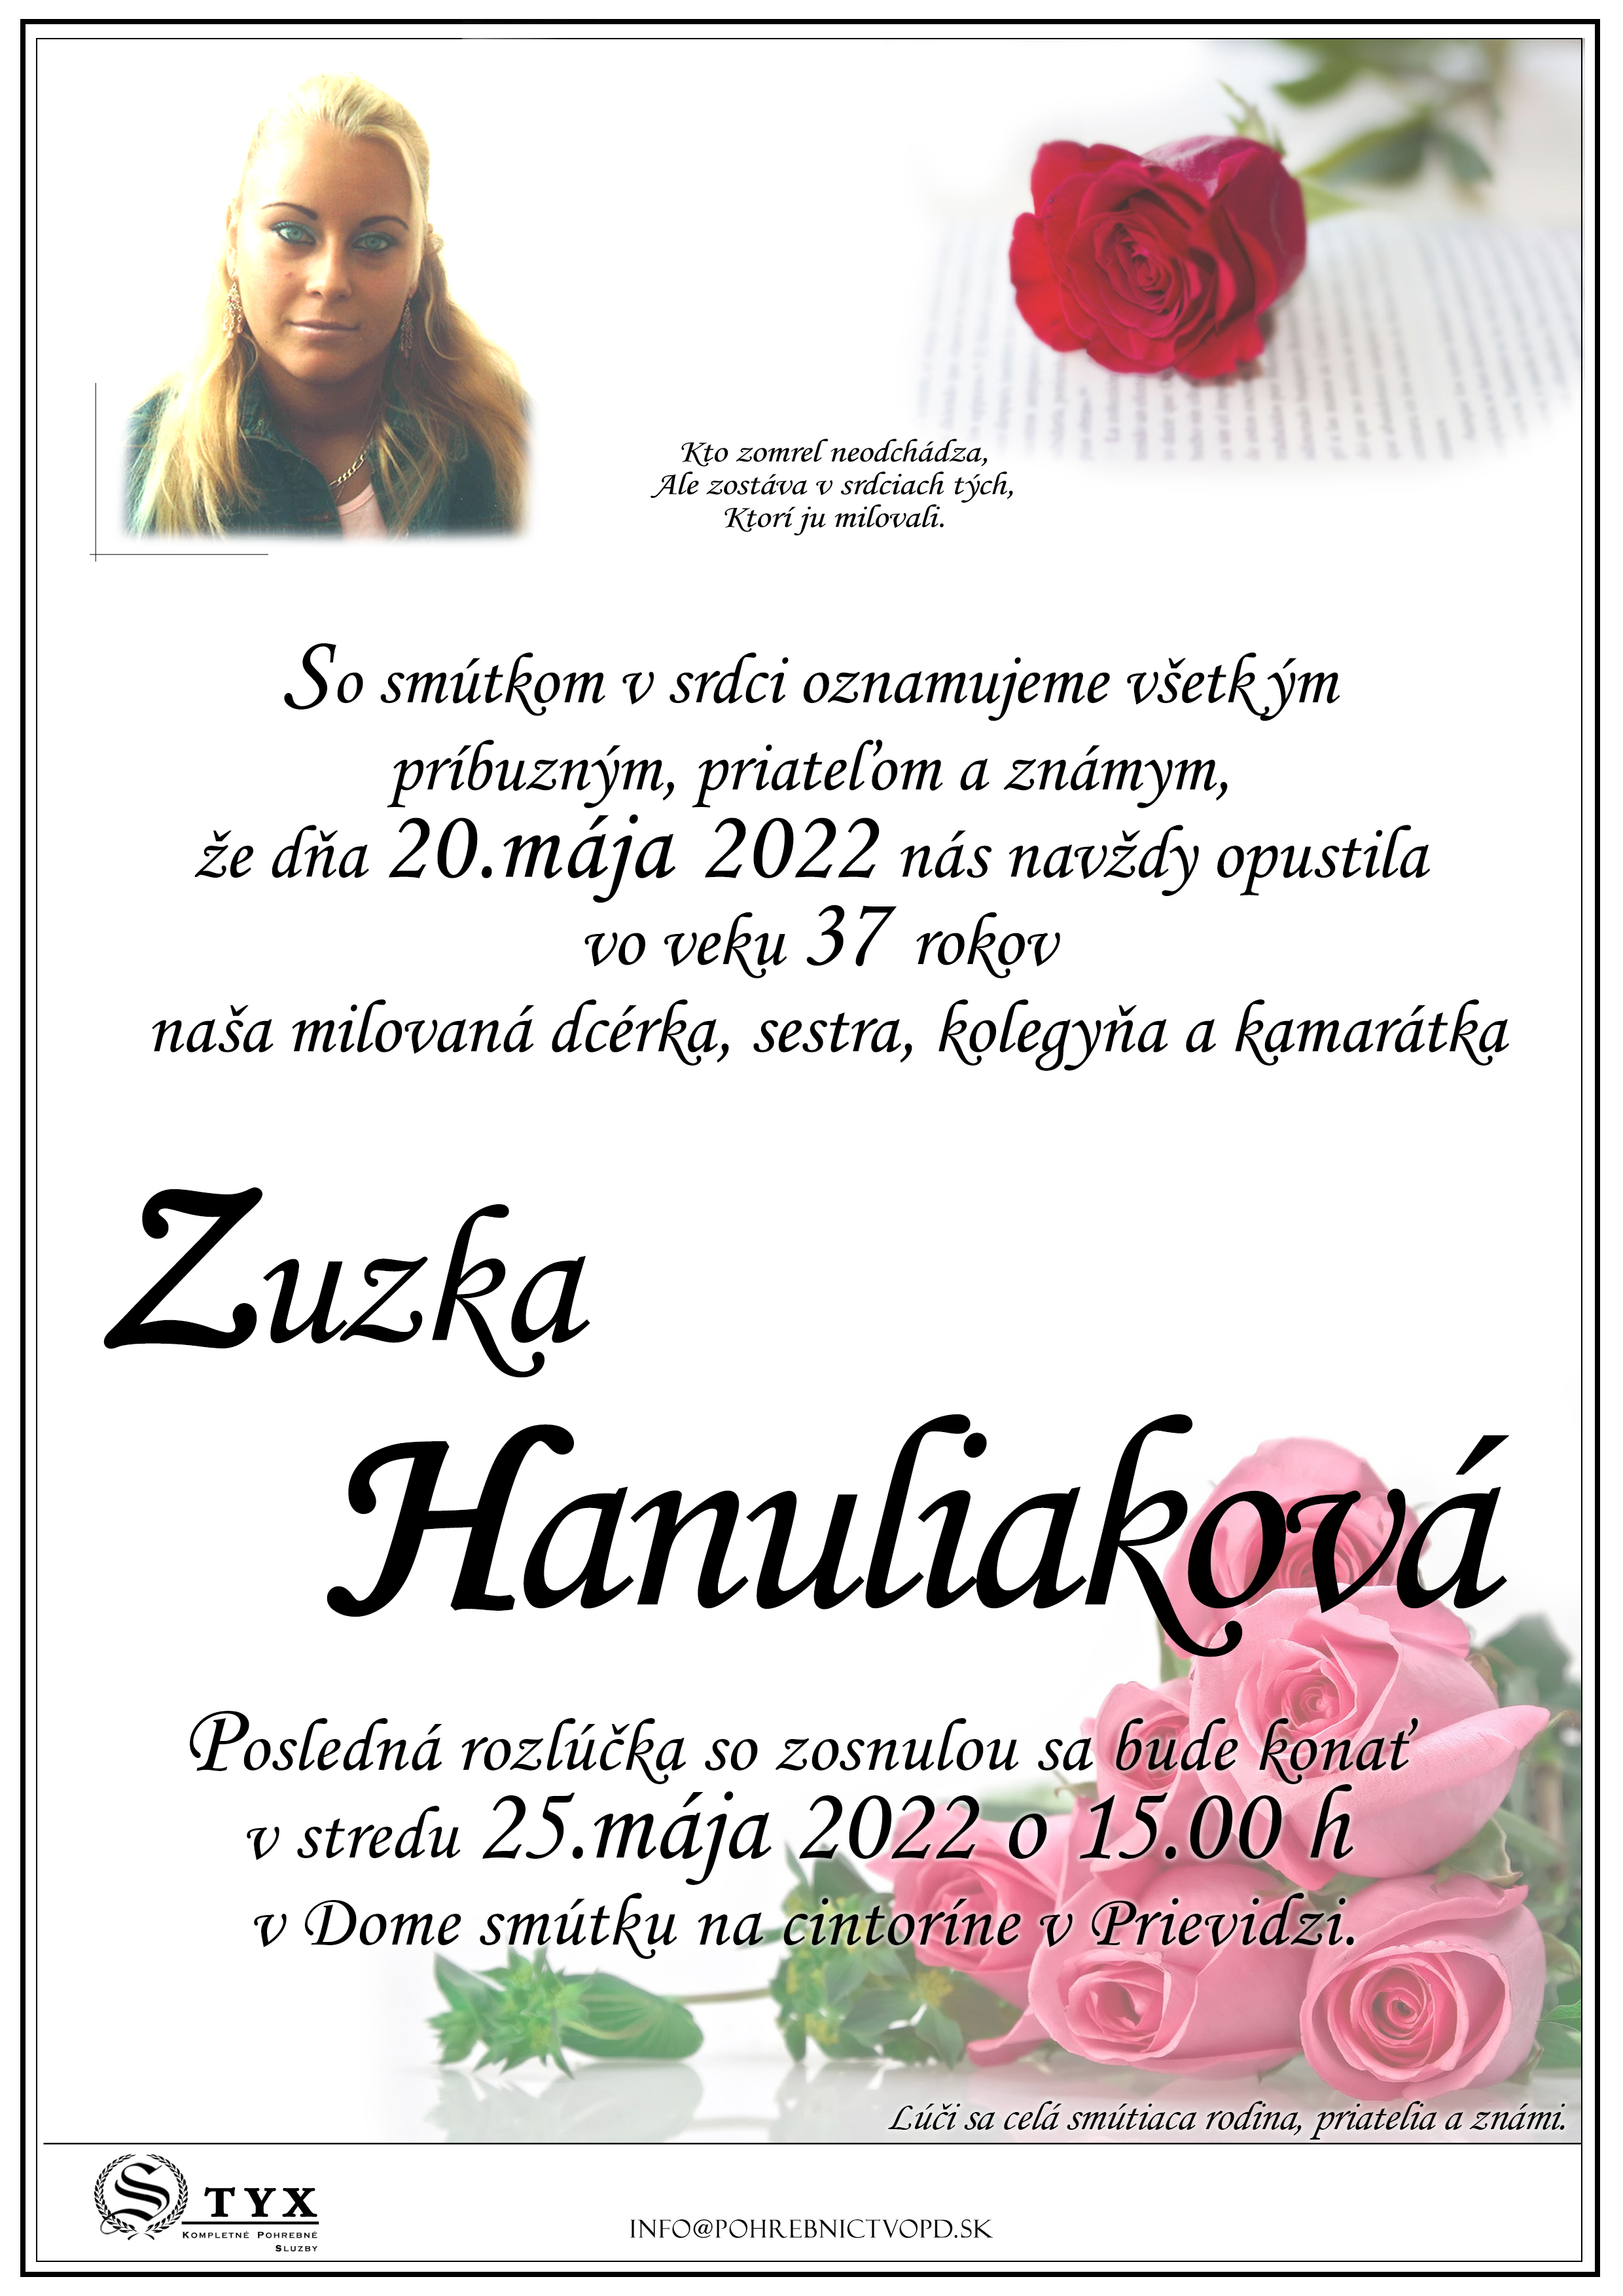 Zuzka Hanuliakova - parte